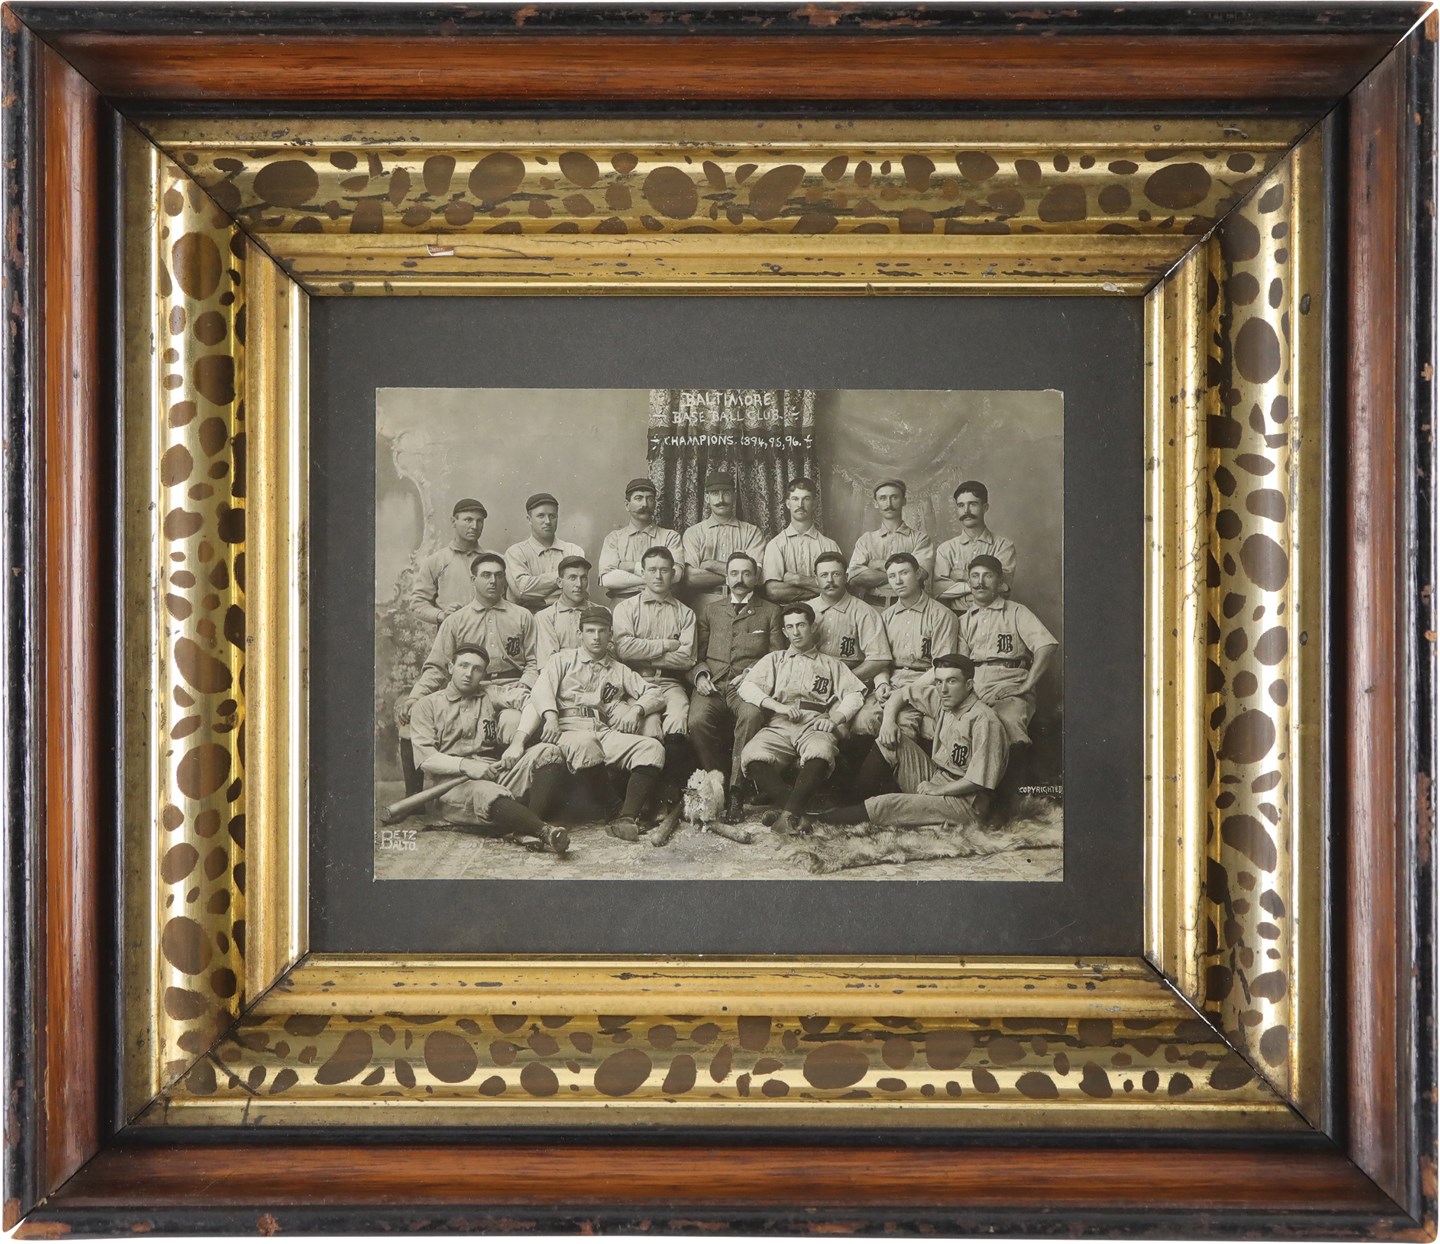 - Circa 1897 Baltimore Base Ball Club Mounted Team Photograph by Betz Studios